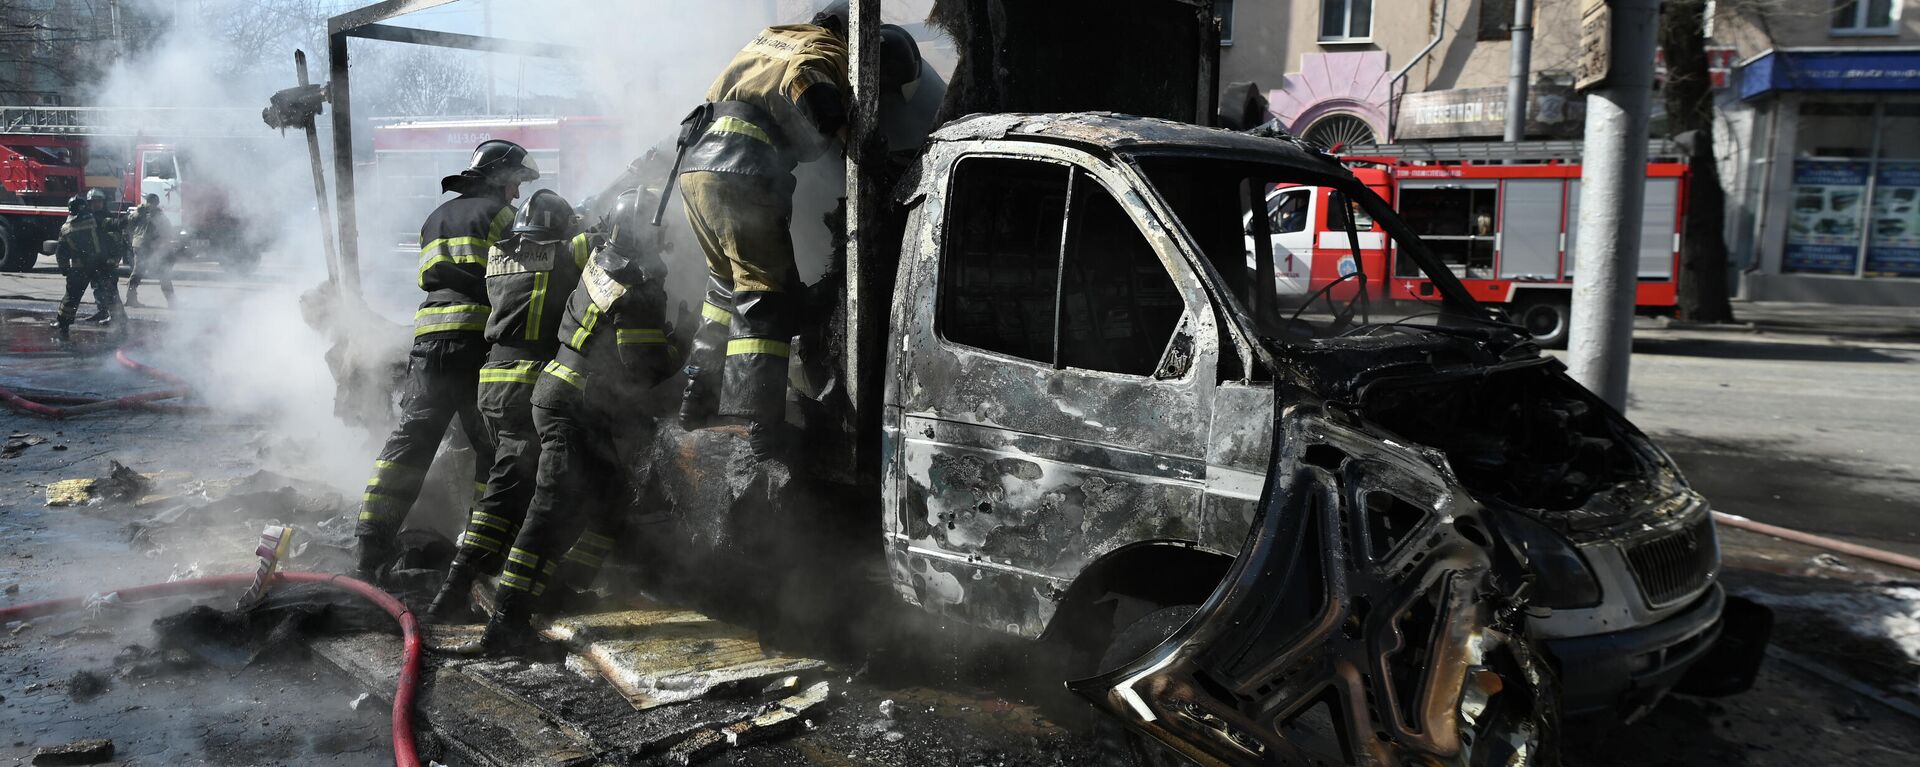 Vatrogasci gase zapaljeni automobil nakon nedavnog granatiranja u Donjecku. - Sputnik Srbija, 1920, 25.03.2022